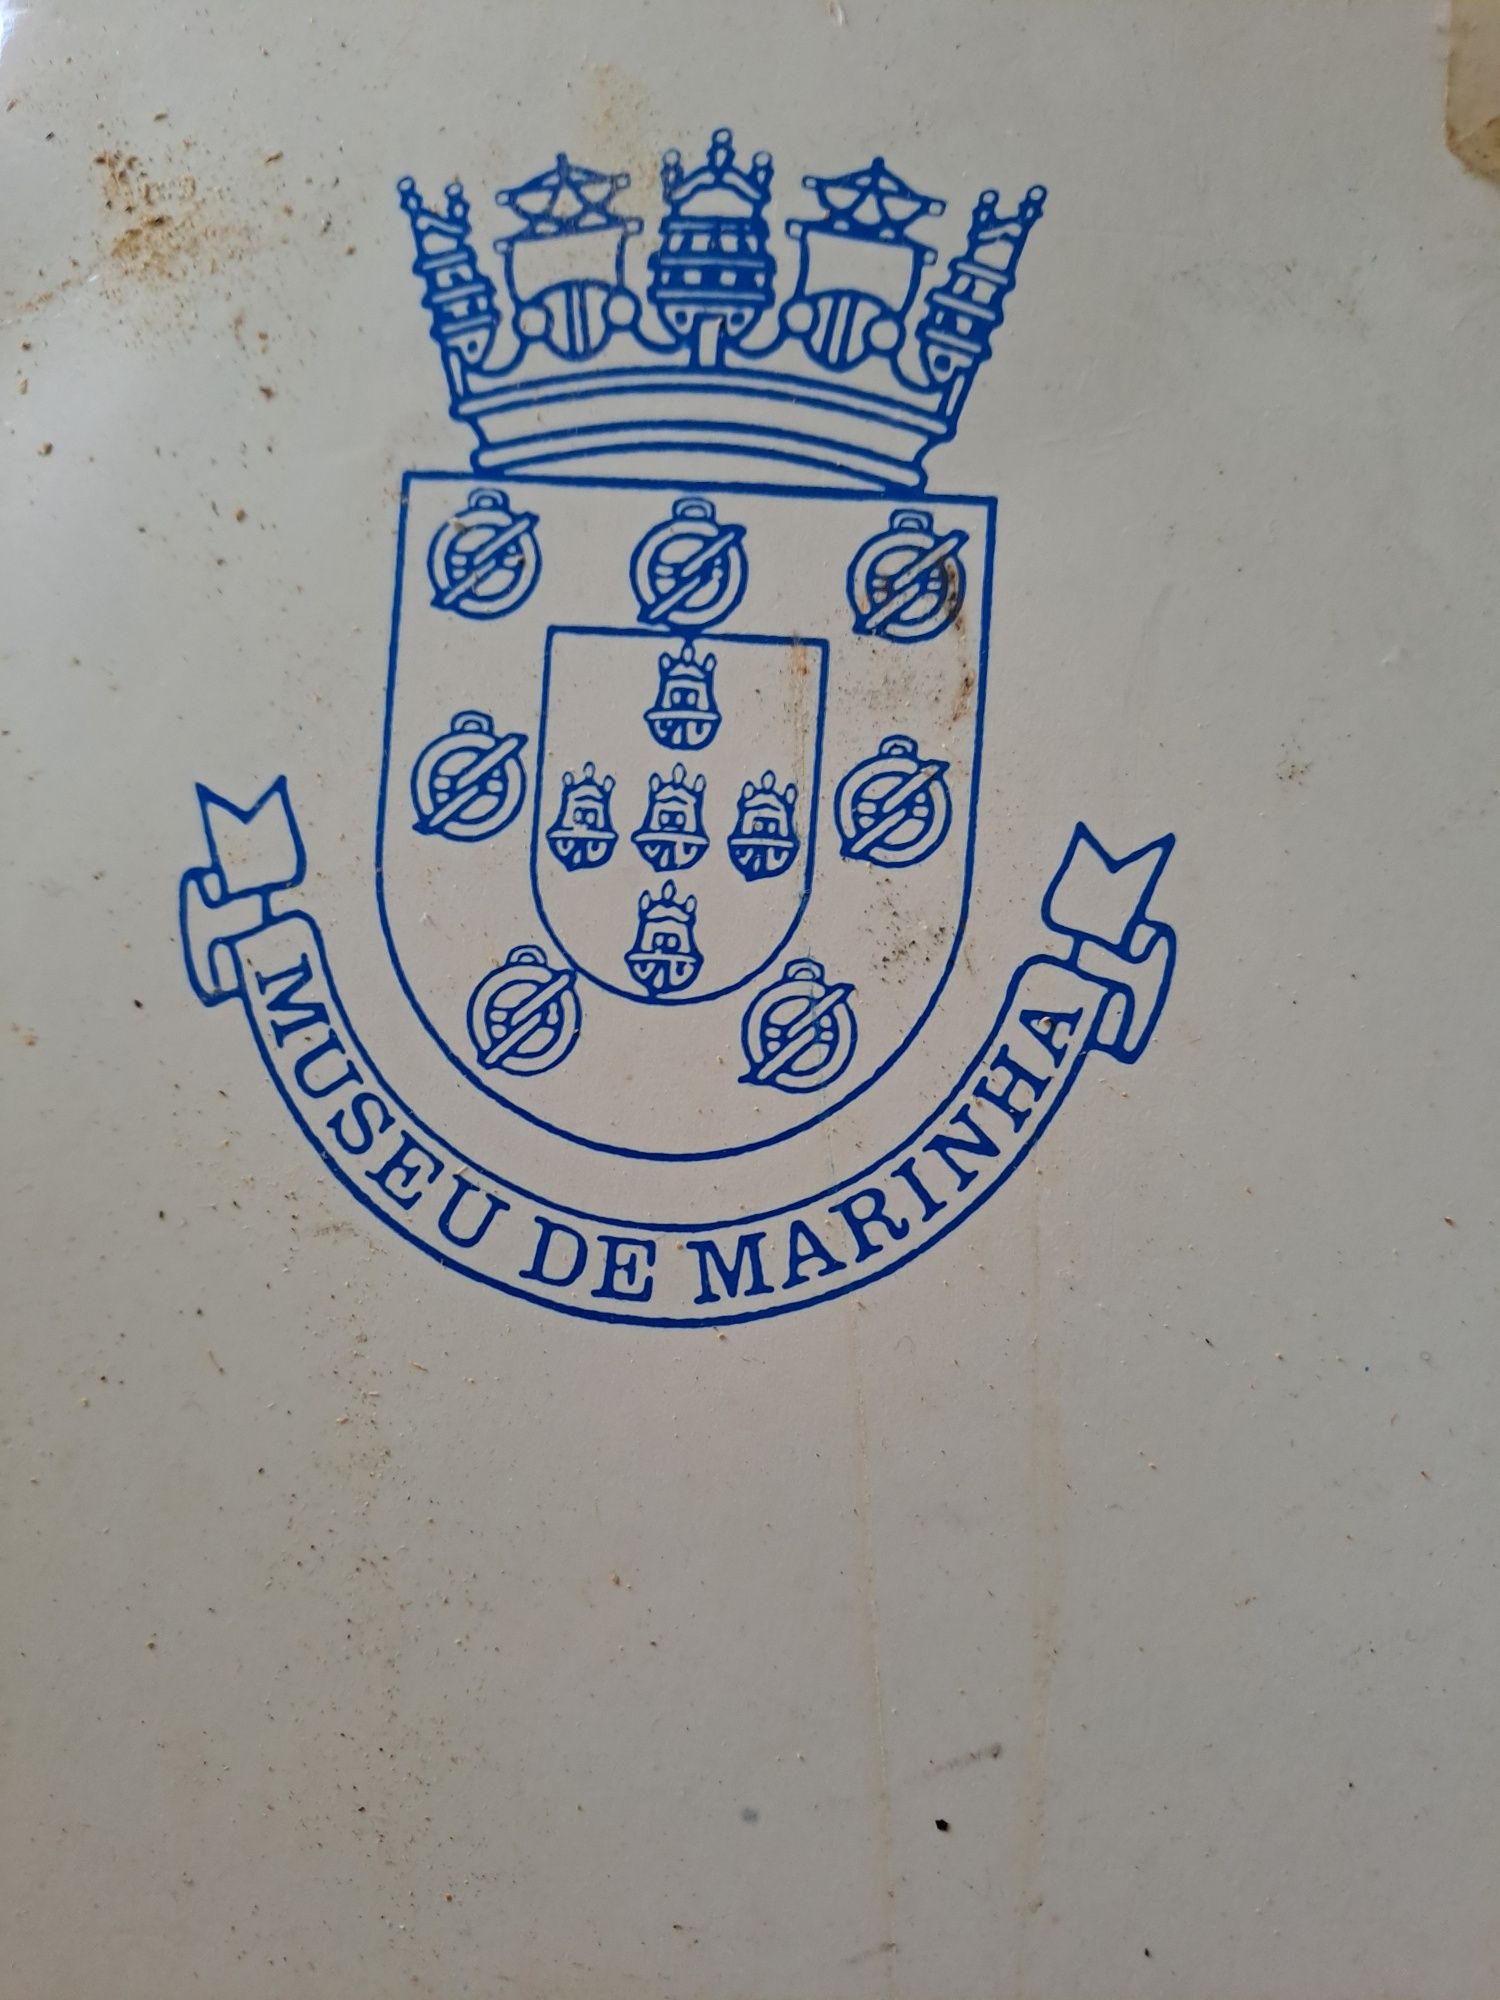 Serviço Vista Alegre - Museu da Marinha